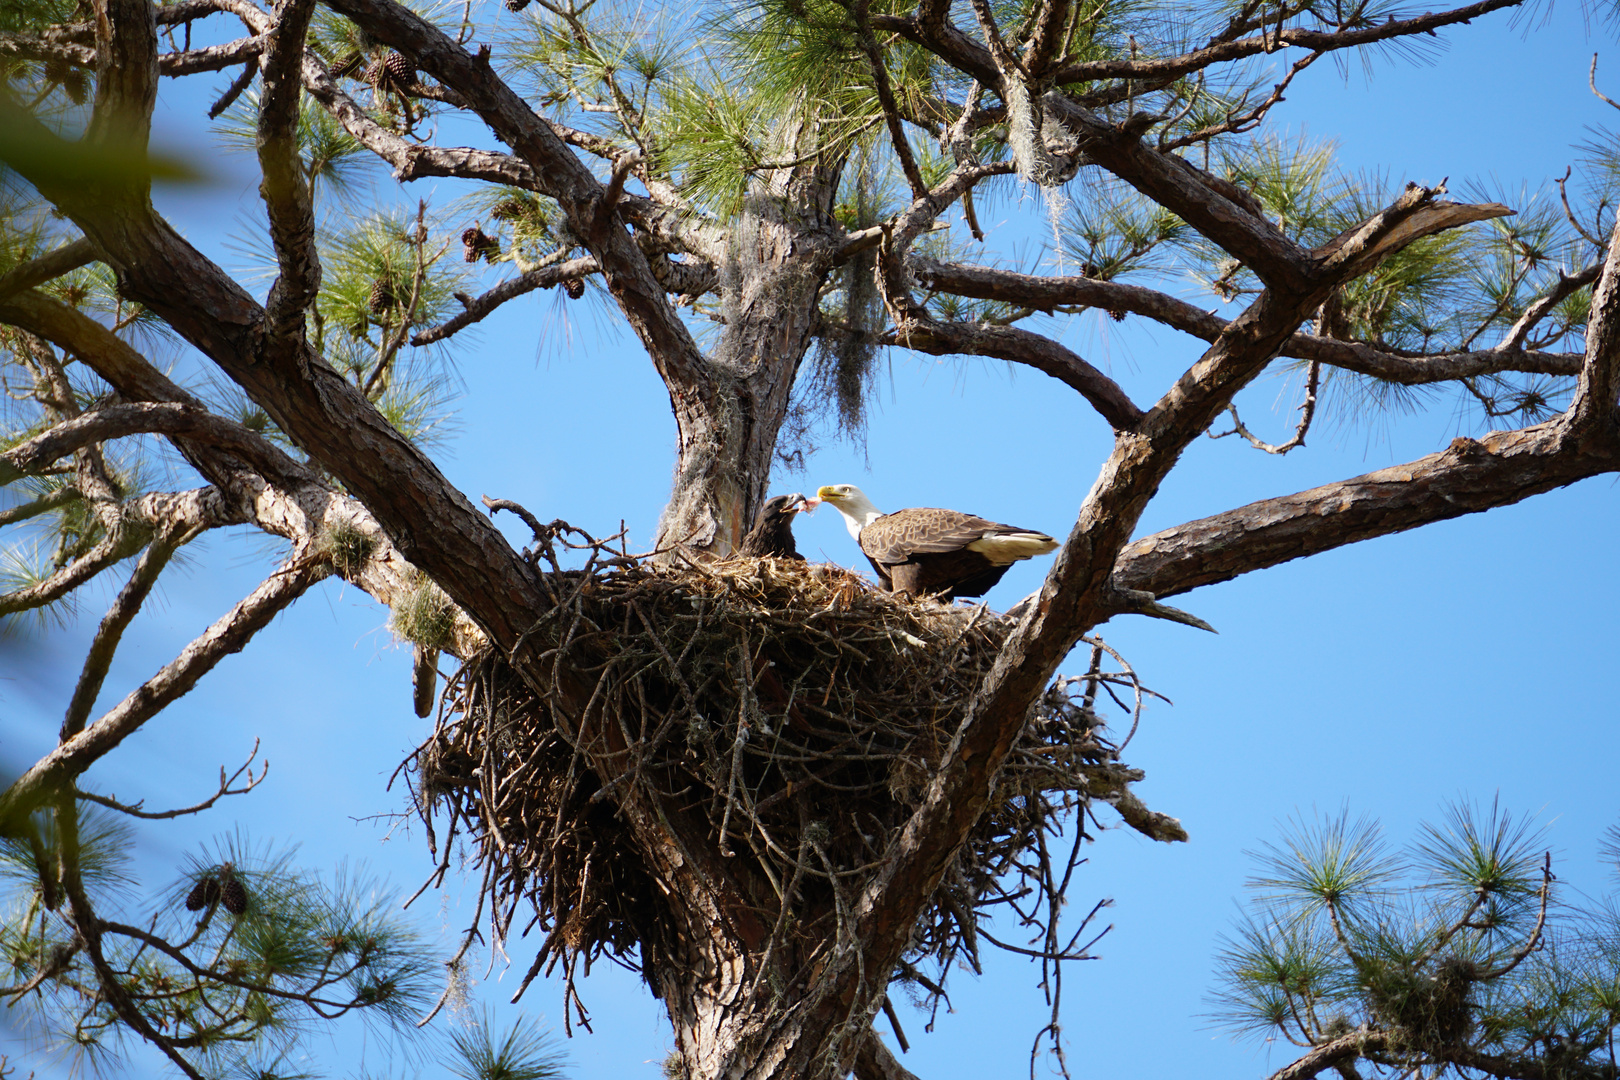 Fütterung der Baby Eagle in Florida